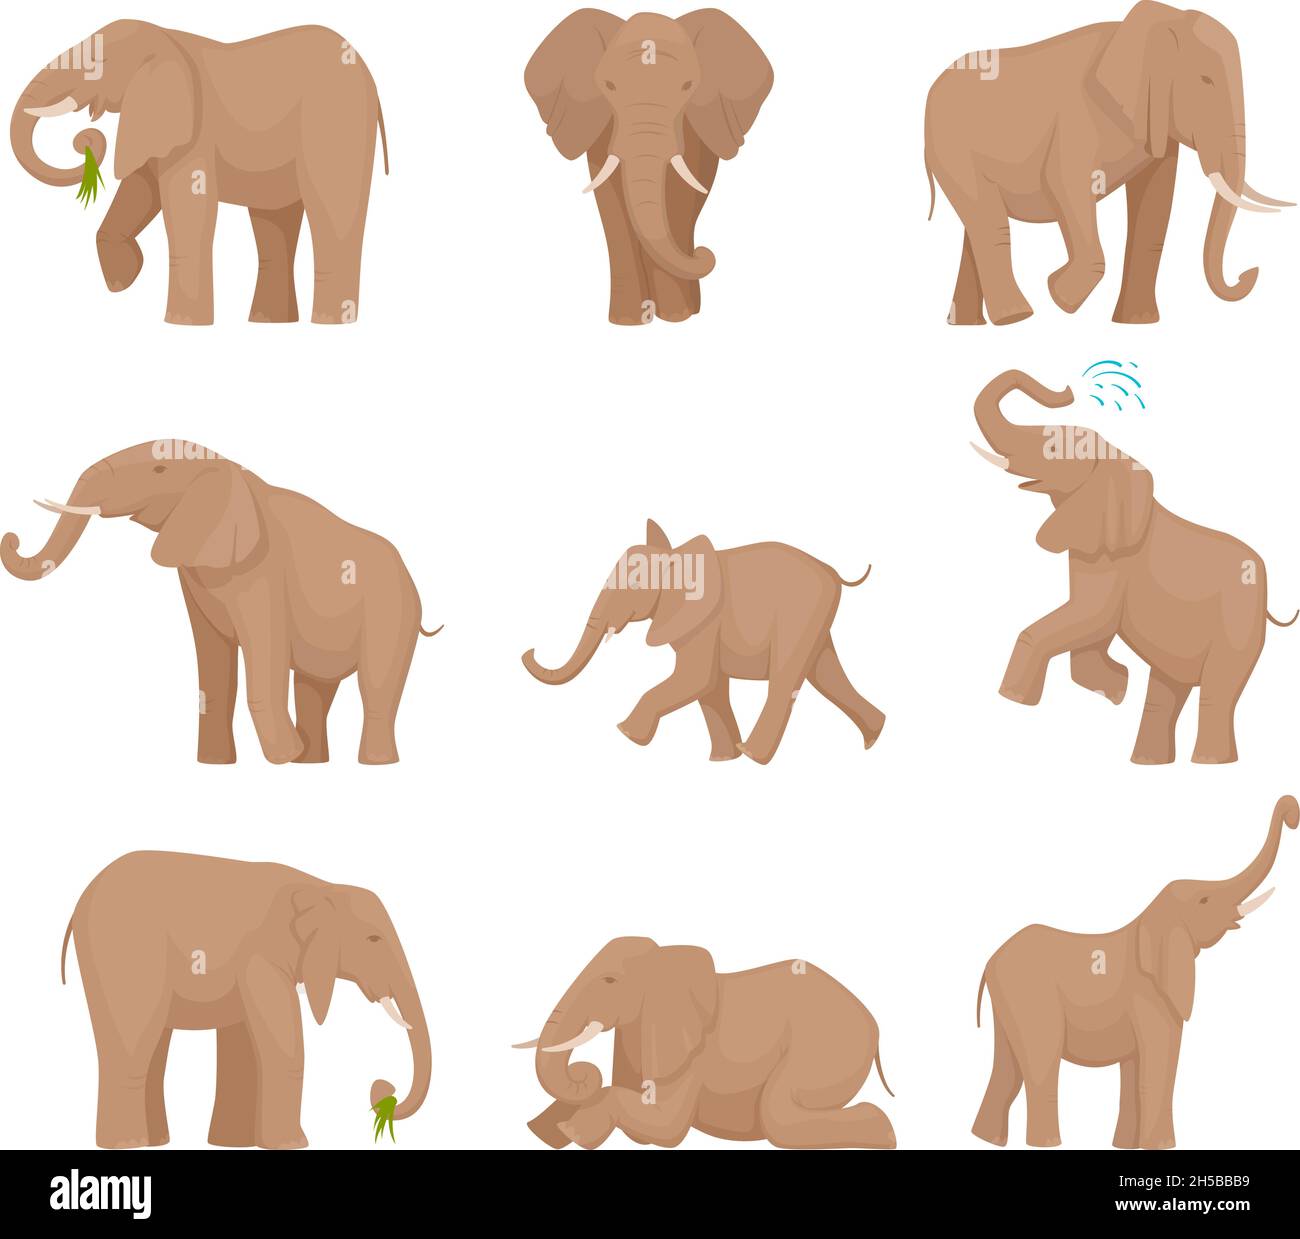 Grands éléphants africains.Ensemble d'images vectorielles exactes pour les grands éléphants sauvages Illustration de Vecteur